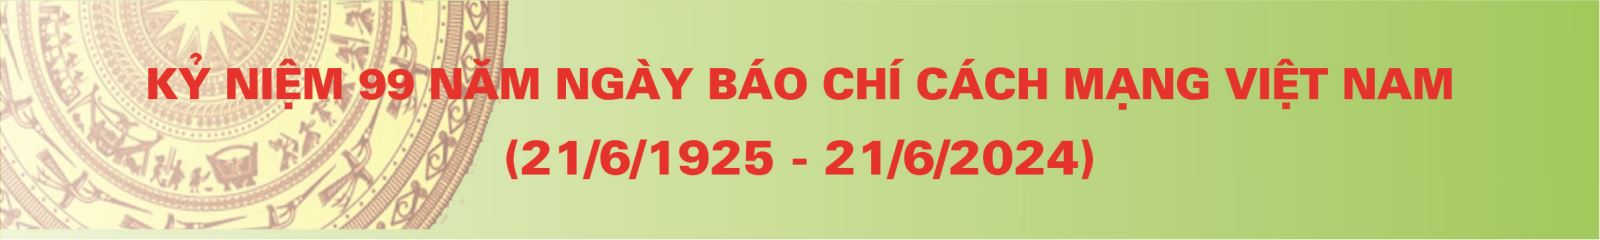 99 năm ngày Báo chí Cách mạng Việt Nam (21/6/2025-21/6/2024)